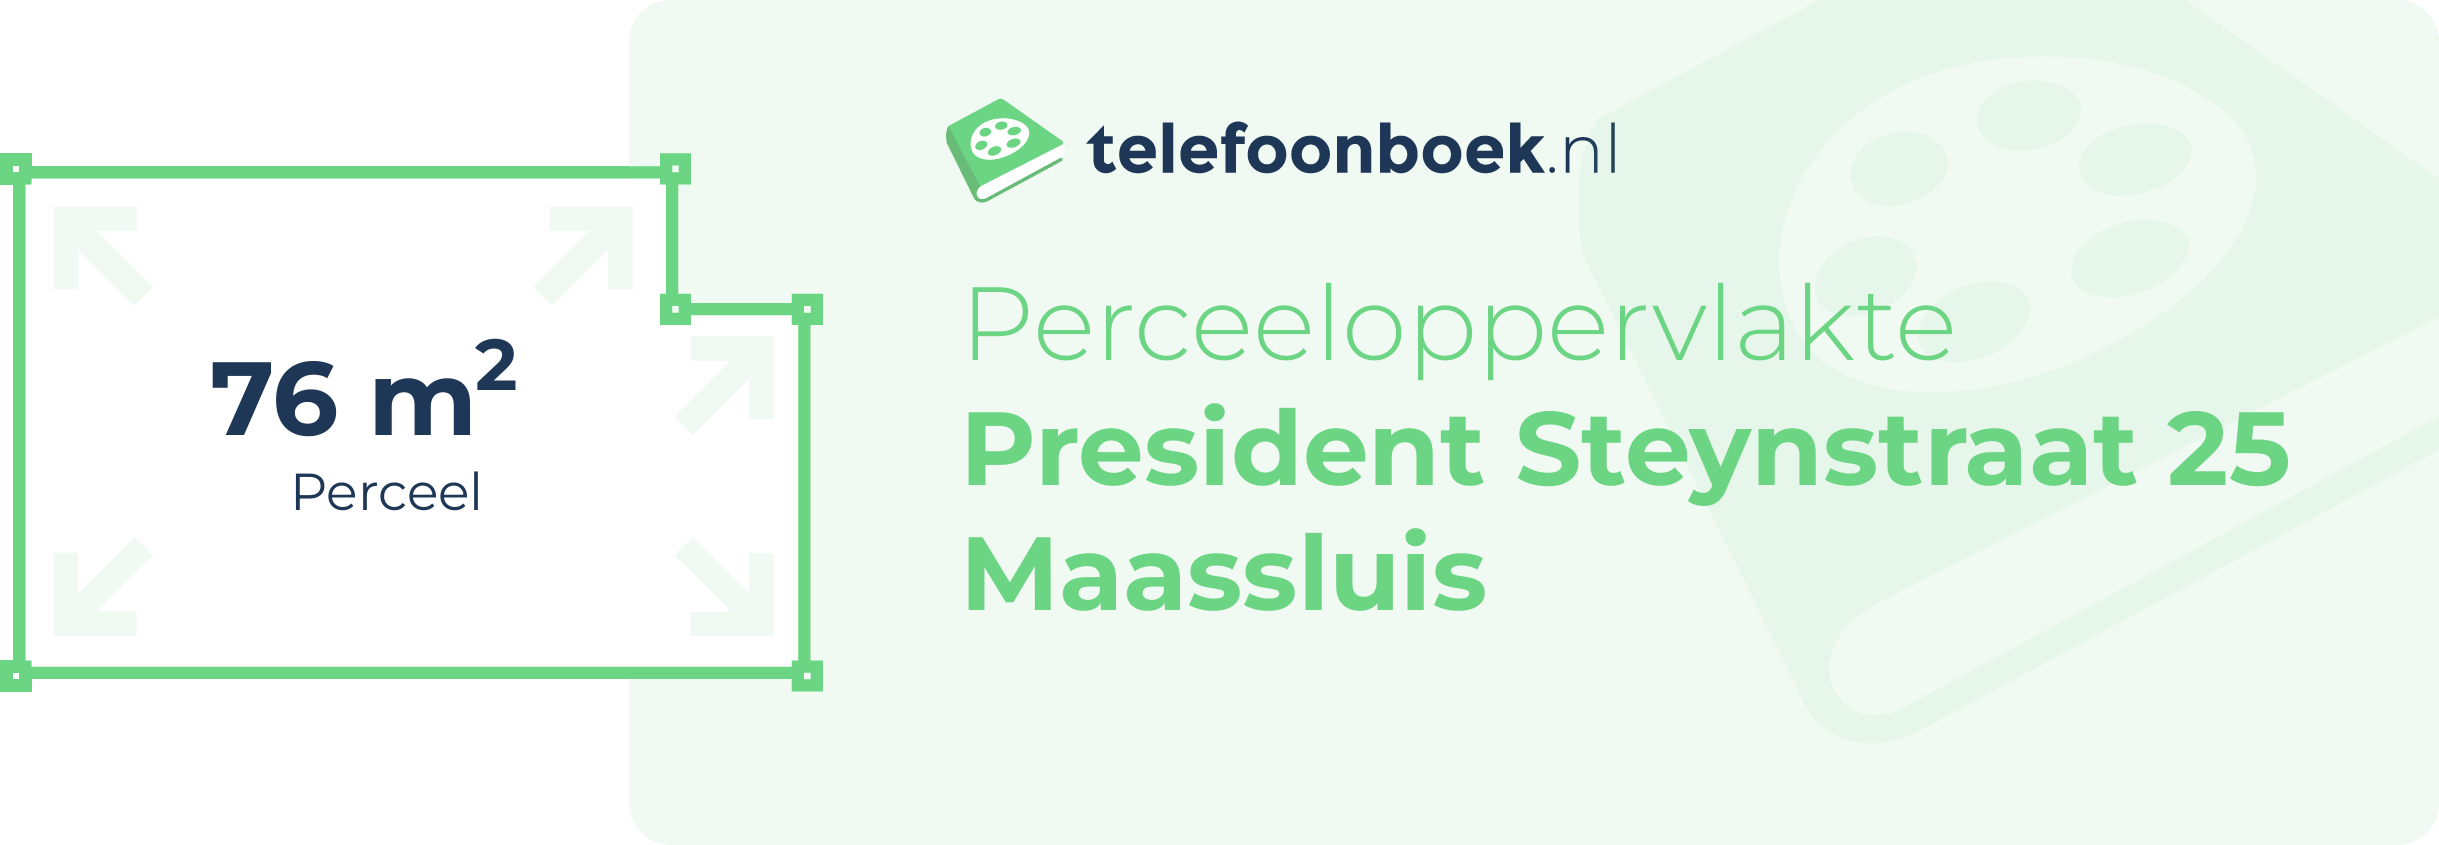 Perceeloppervlakte President Steynstraat 25 Maassluis